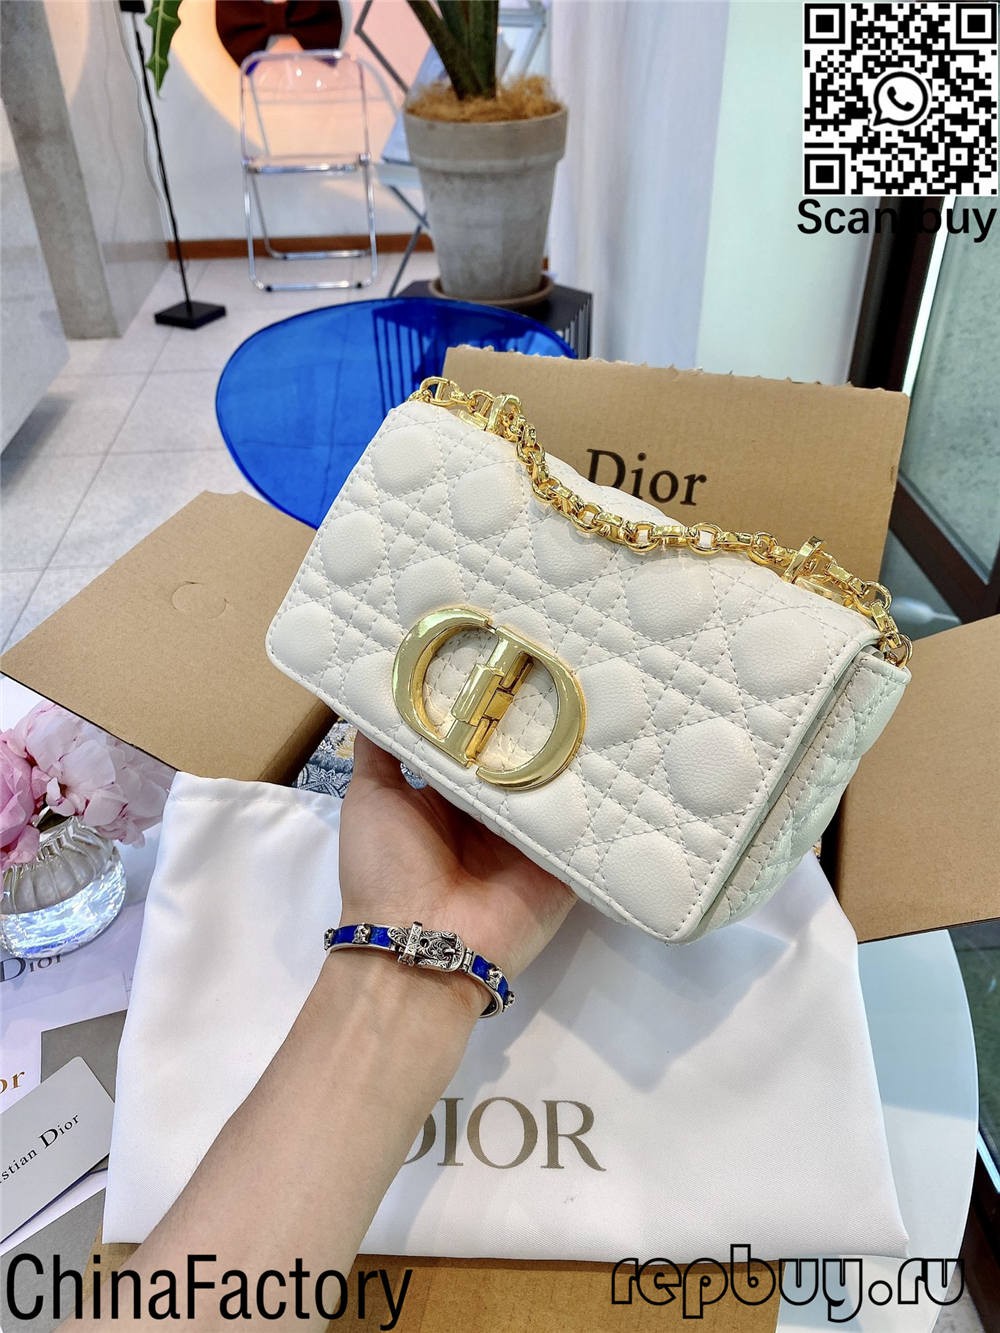 Dior mafi darajar siyan 12 replica bags (2022 updated) -Mafi ingancin Karya Louis Vuitton Bag Online Store, Replica designer jakar ru